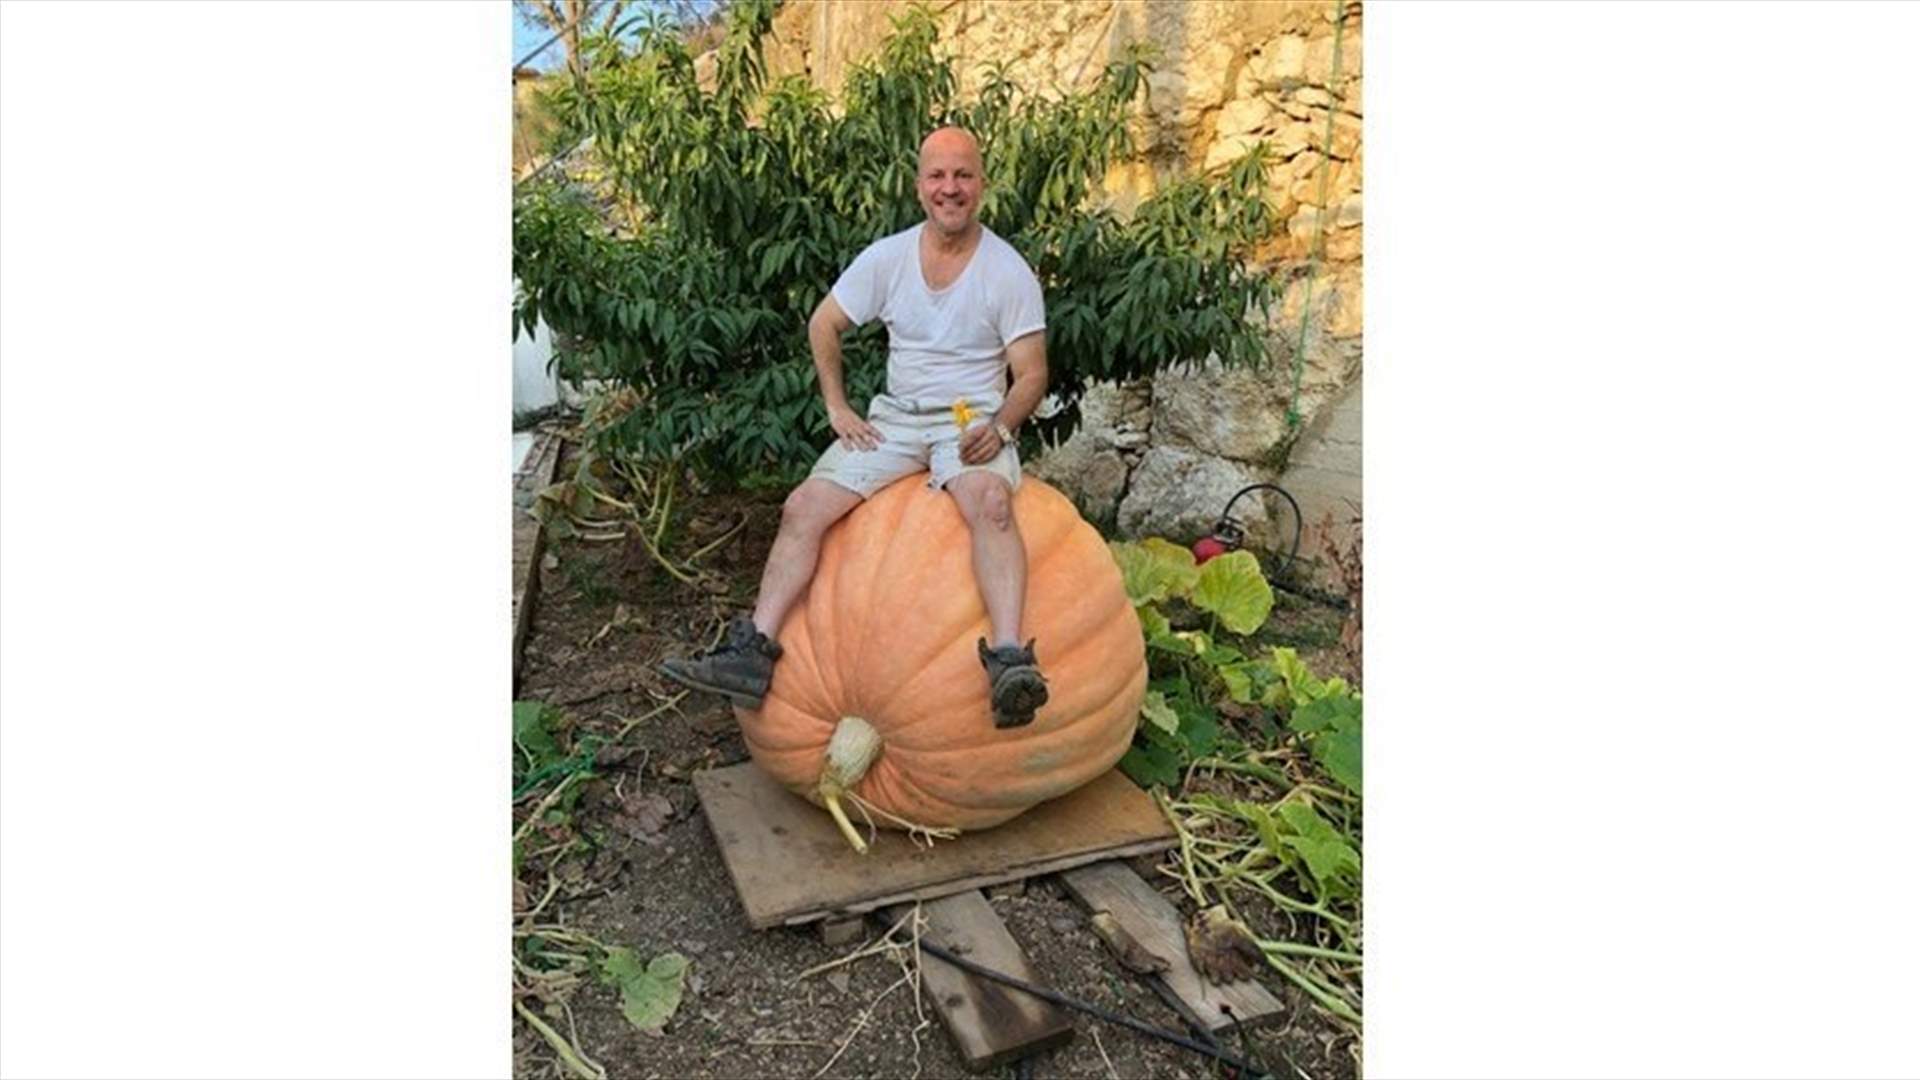 Huge pumpkin found in Aley-[PHOTOS]